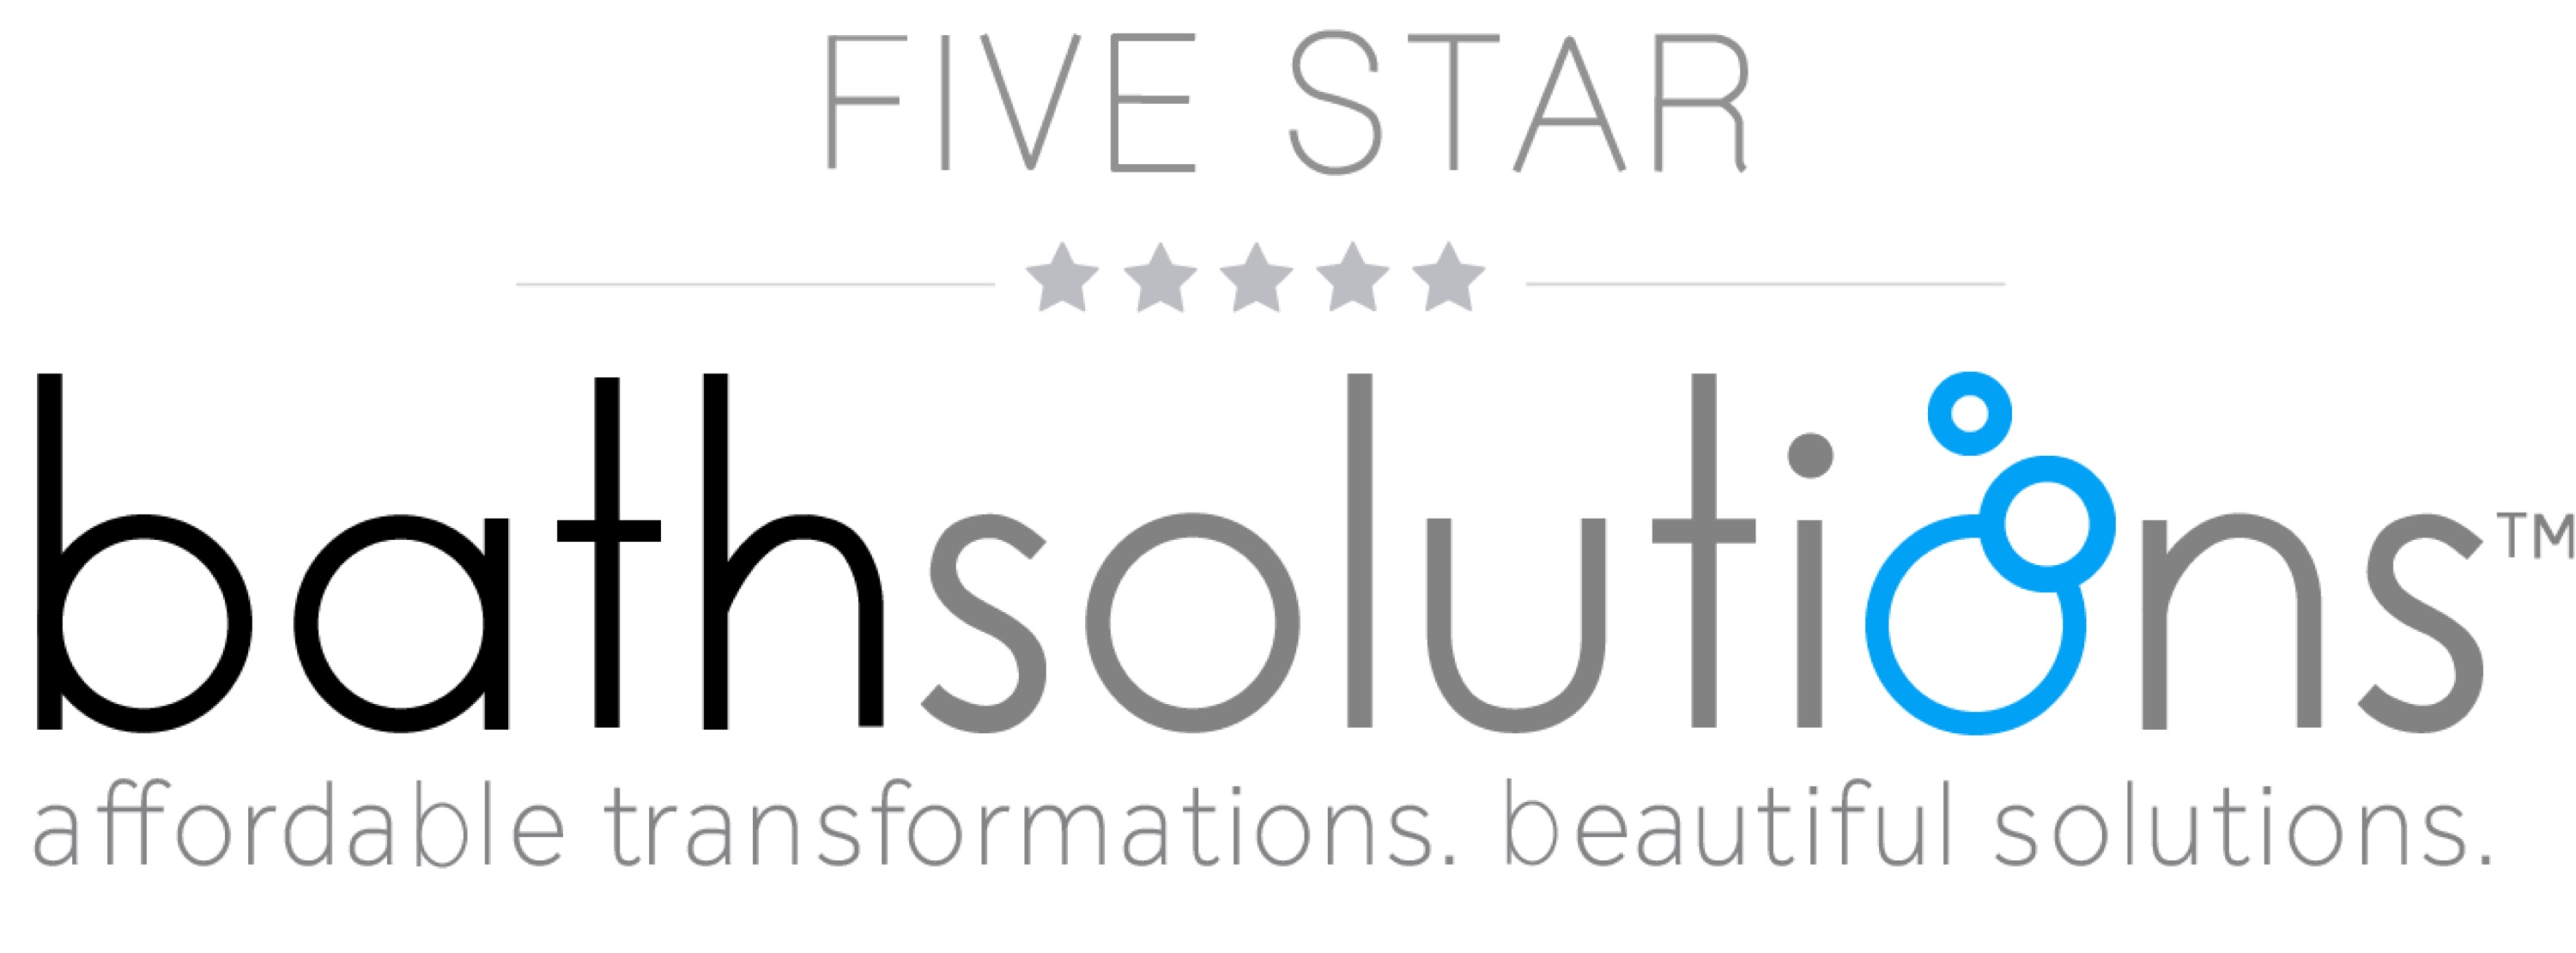 Five Star Bath Solutions of Colorado Springs Logo